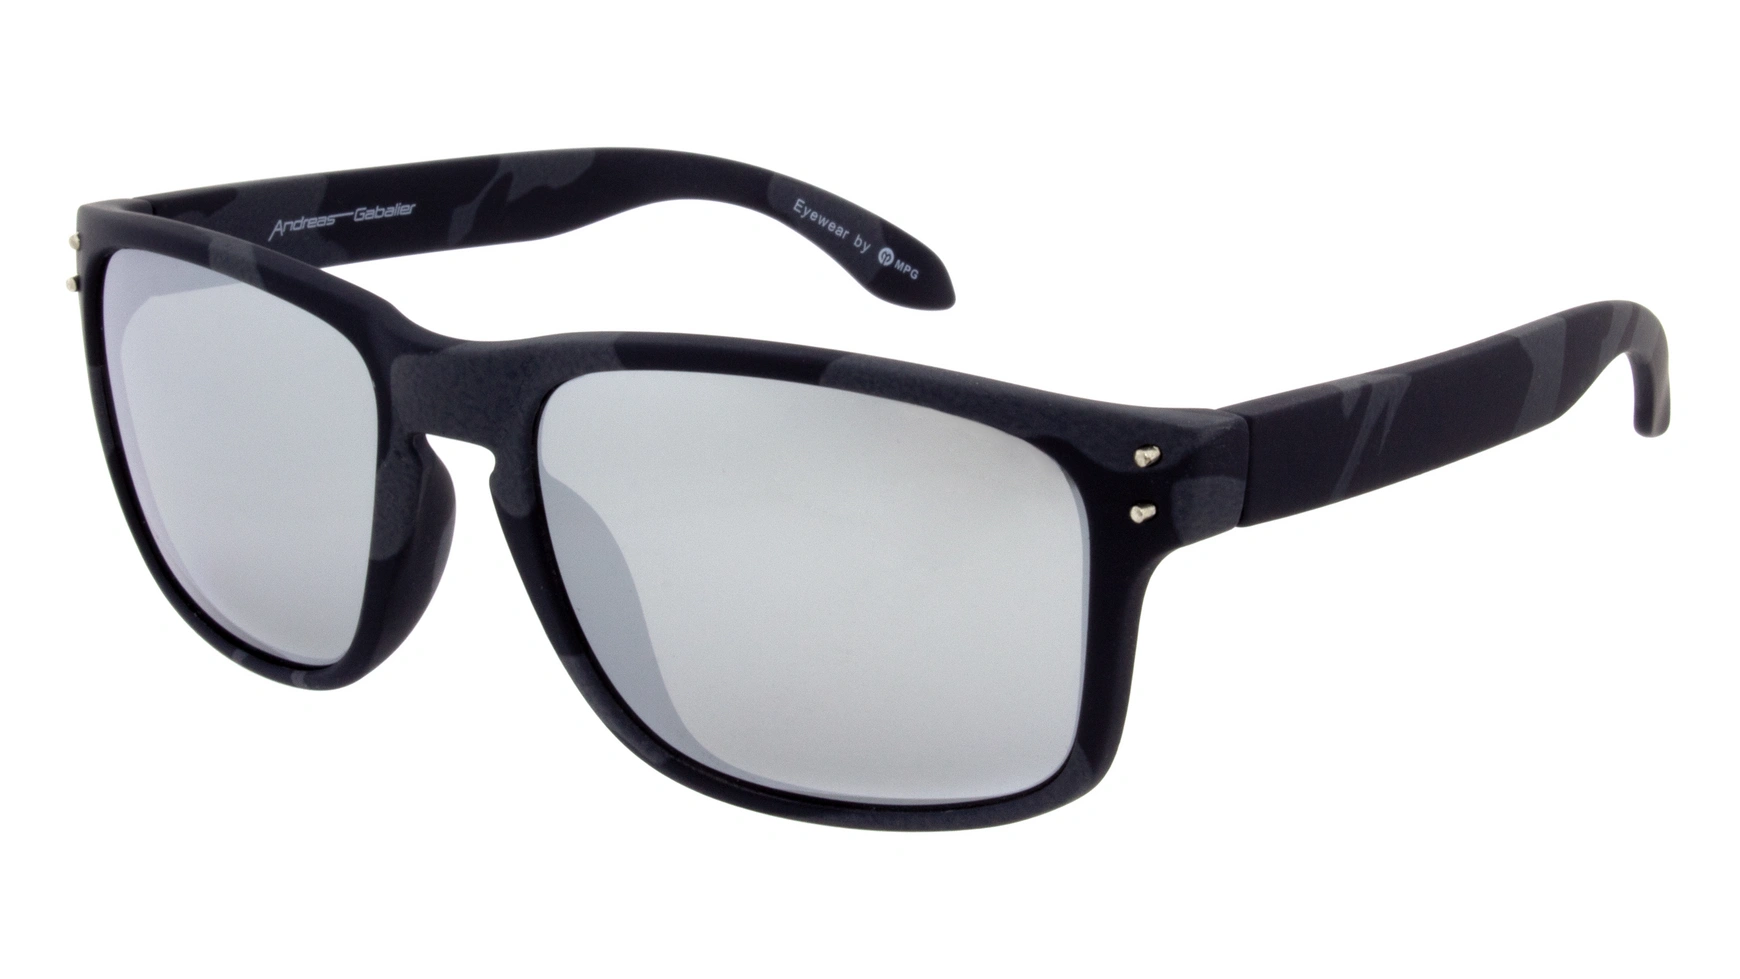 Солнцезащитные очки Andreas Gabalier пластиковые черные солнцезащитные очки andreas gabalier ags105 пластик